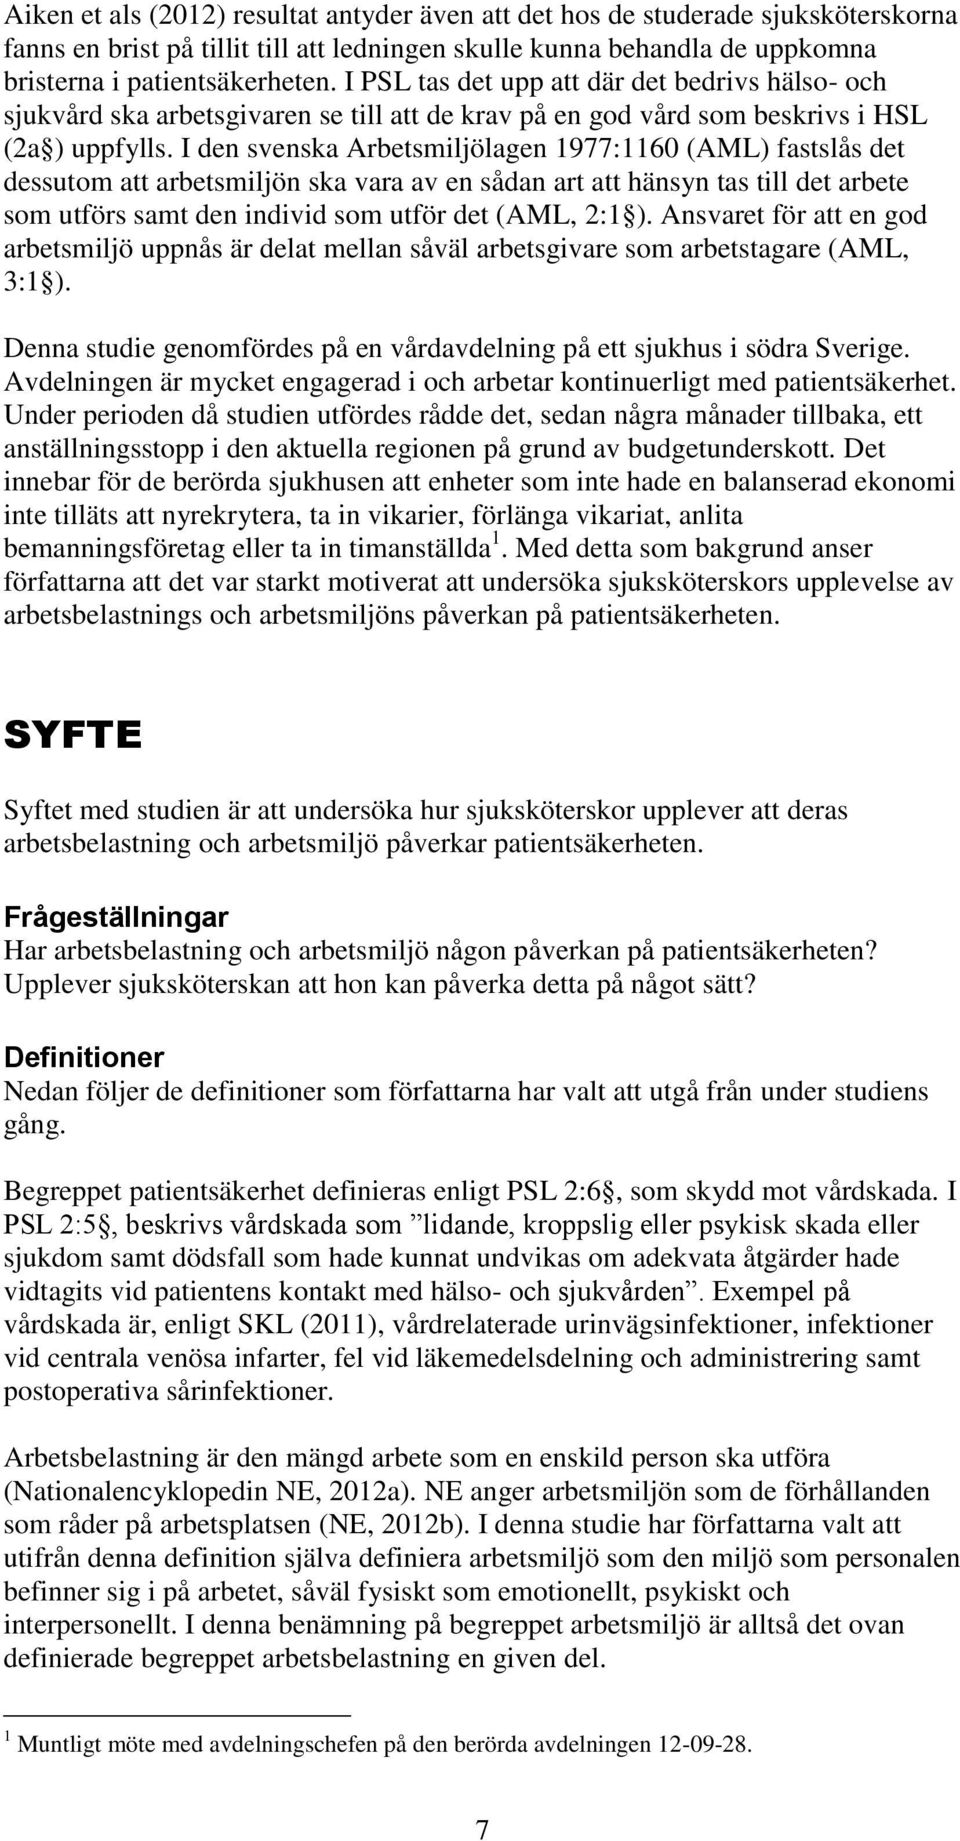 I den svenska Arbetsmiljölagen 1977:1160 (AML) fastslås det dessutom att arbetsmiljön ska vara av en sådan art att hänsyn tas till det arbete som utförs samt den individ som utför det (AML, 2:1 ).